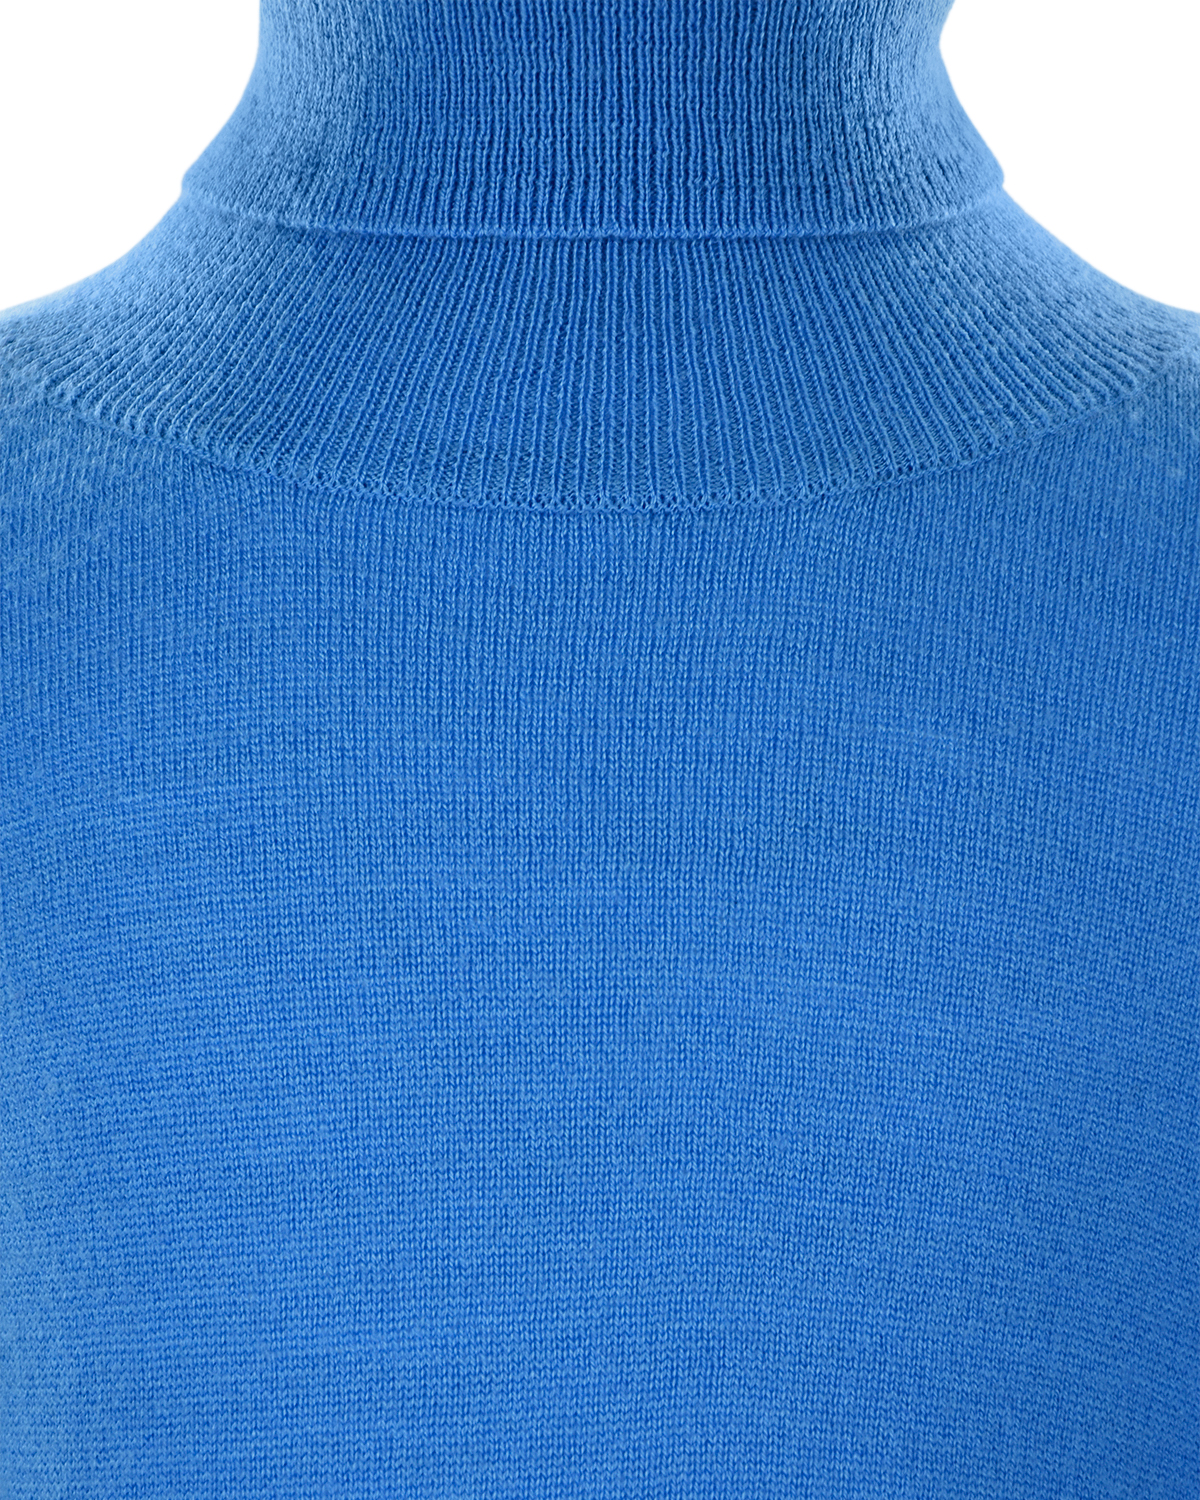 Голубая водолазка из шерсти Norveg детская, размер 116, цвет голубой - фото 4